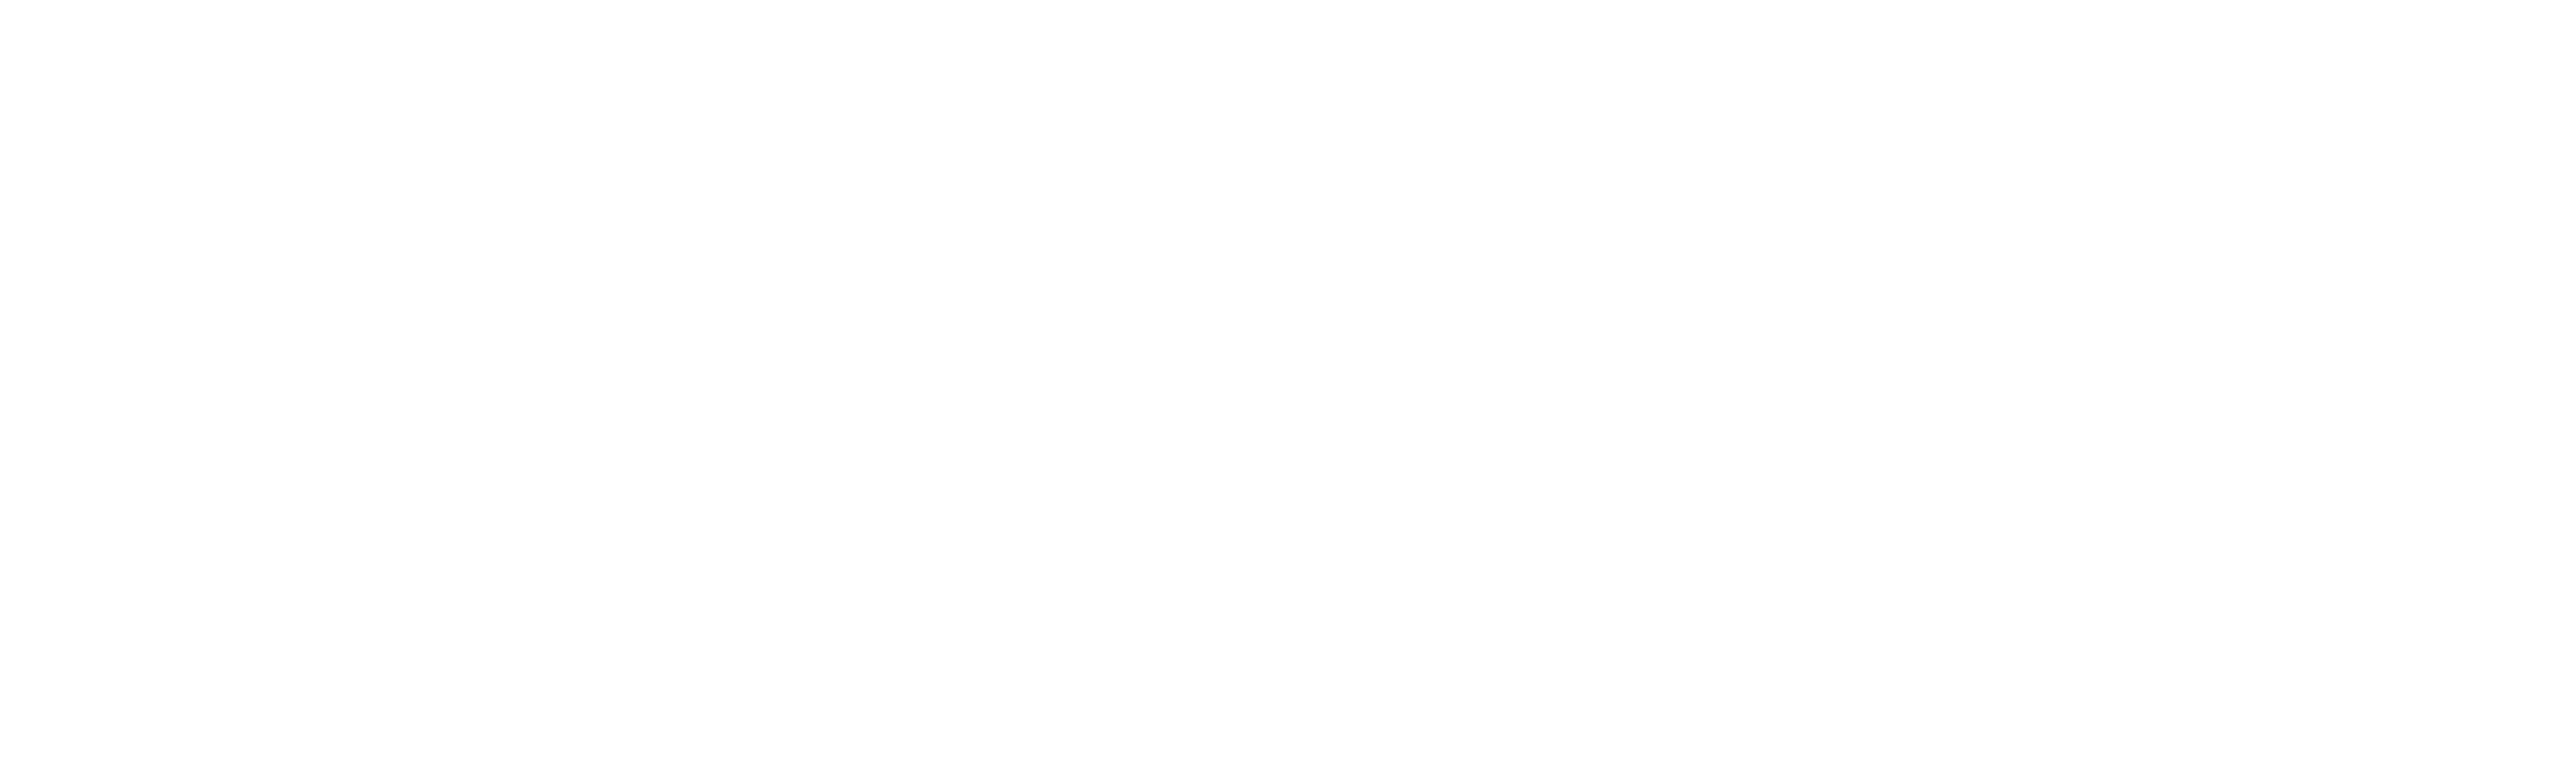 METOS de Pessl Instruments logotipo blanco